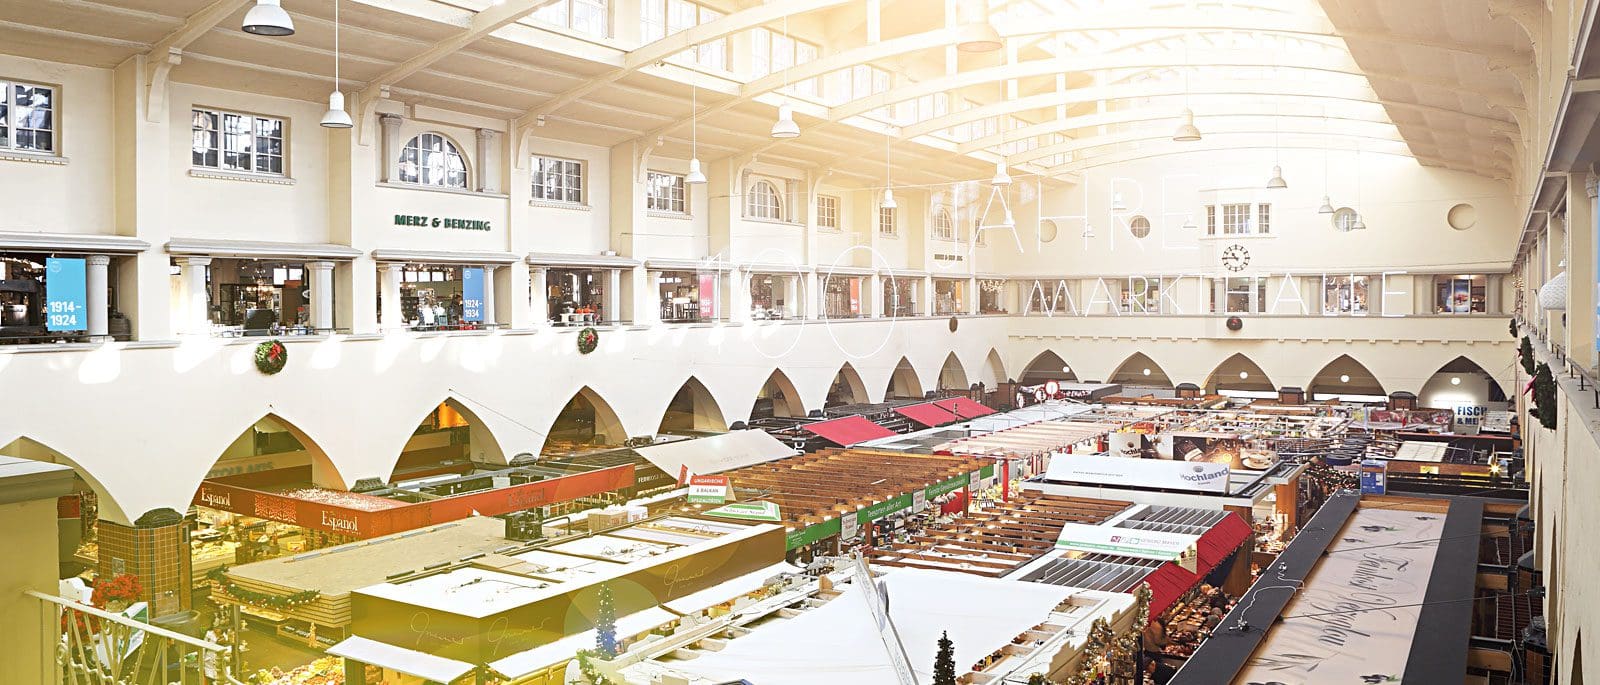 A market hall for Heilbronn